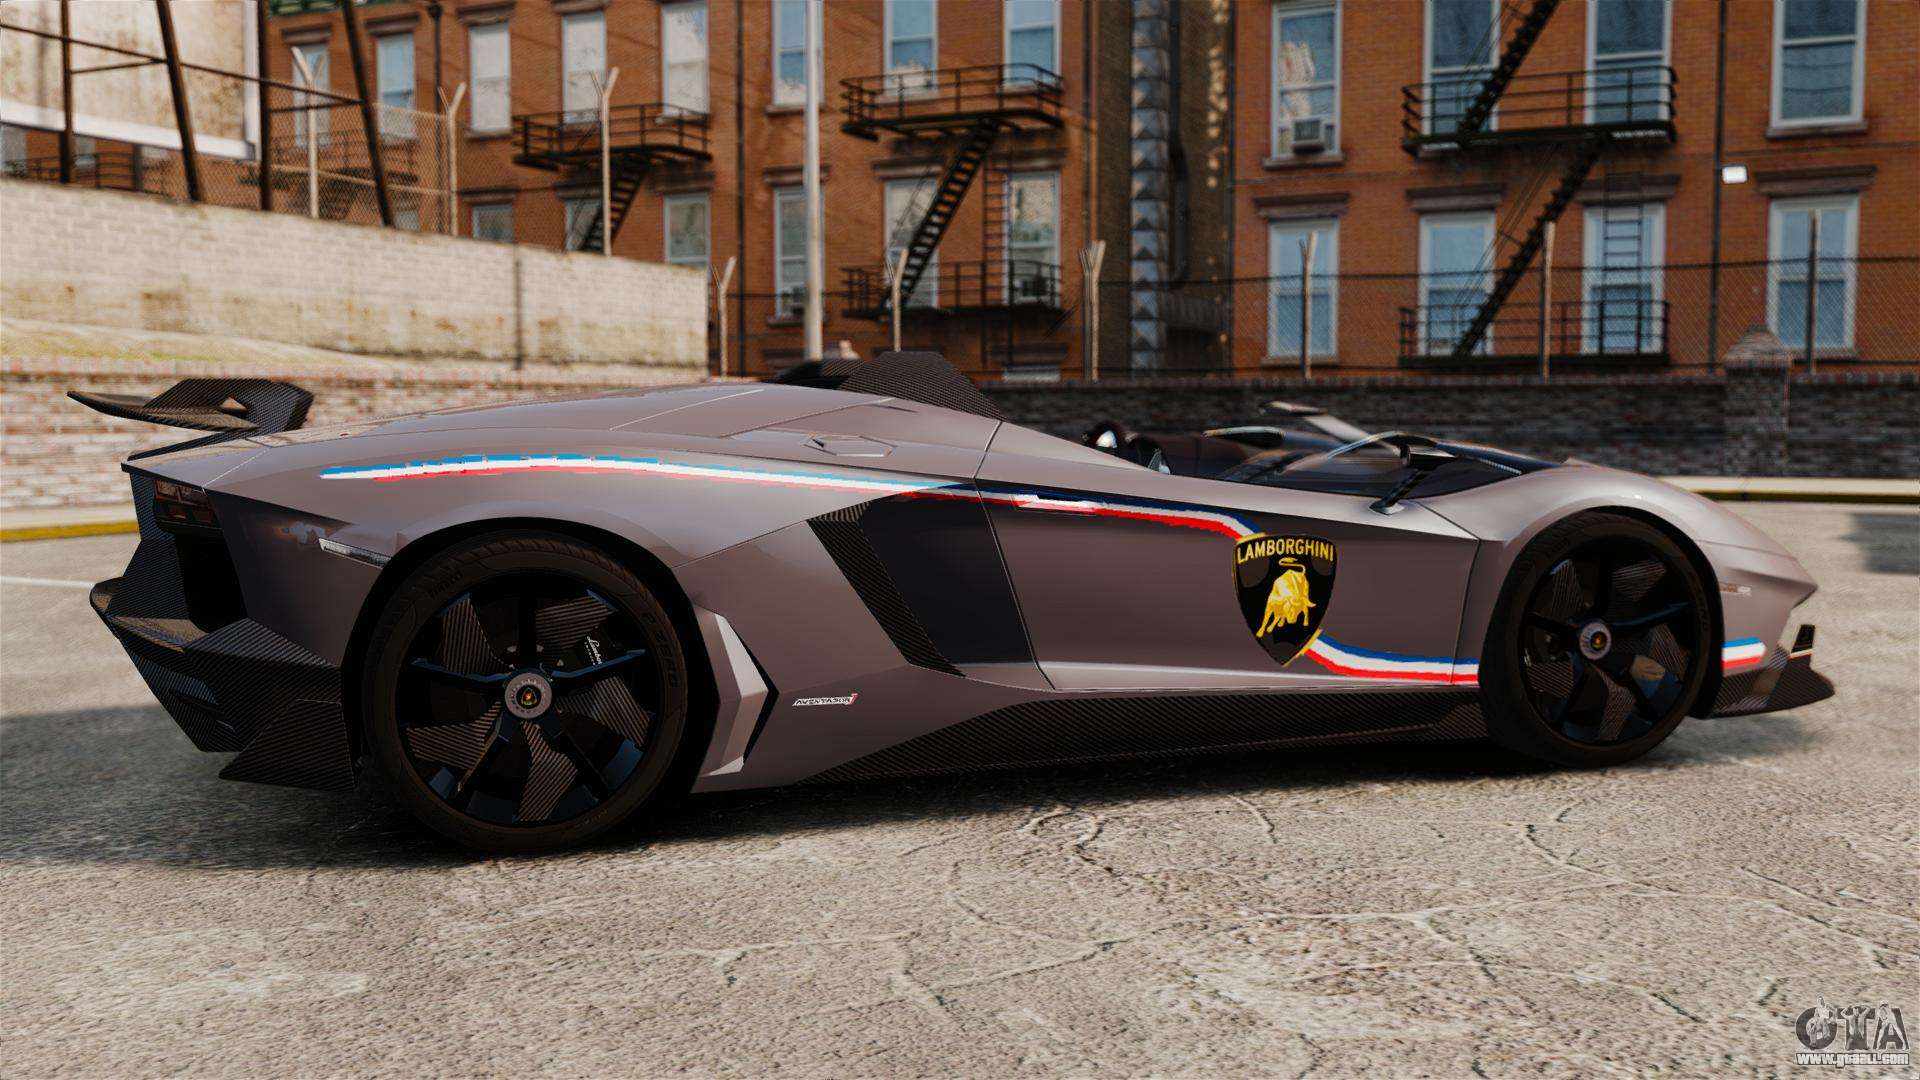 Lamborghini Aventador J Big Lambo for GTA 4